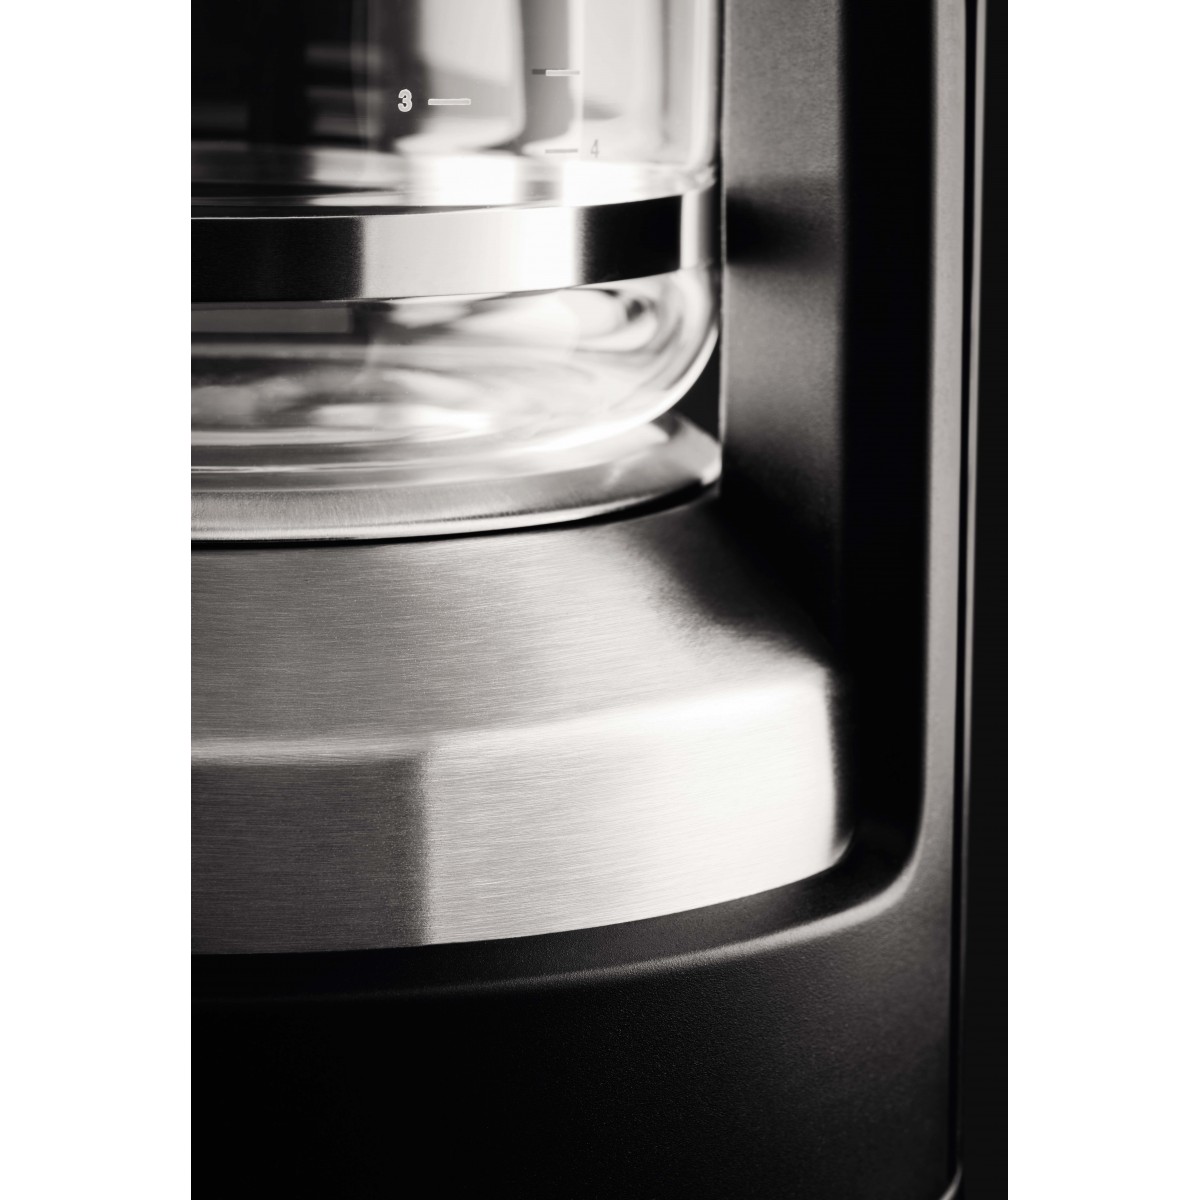 Krups KM4689 - Drip coffee maker - 1.25 L - 850 W - Black